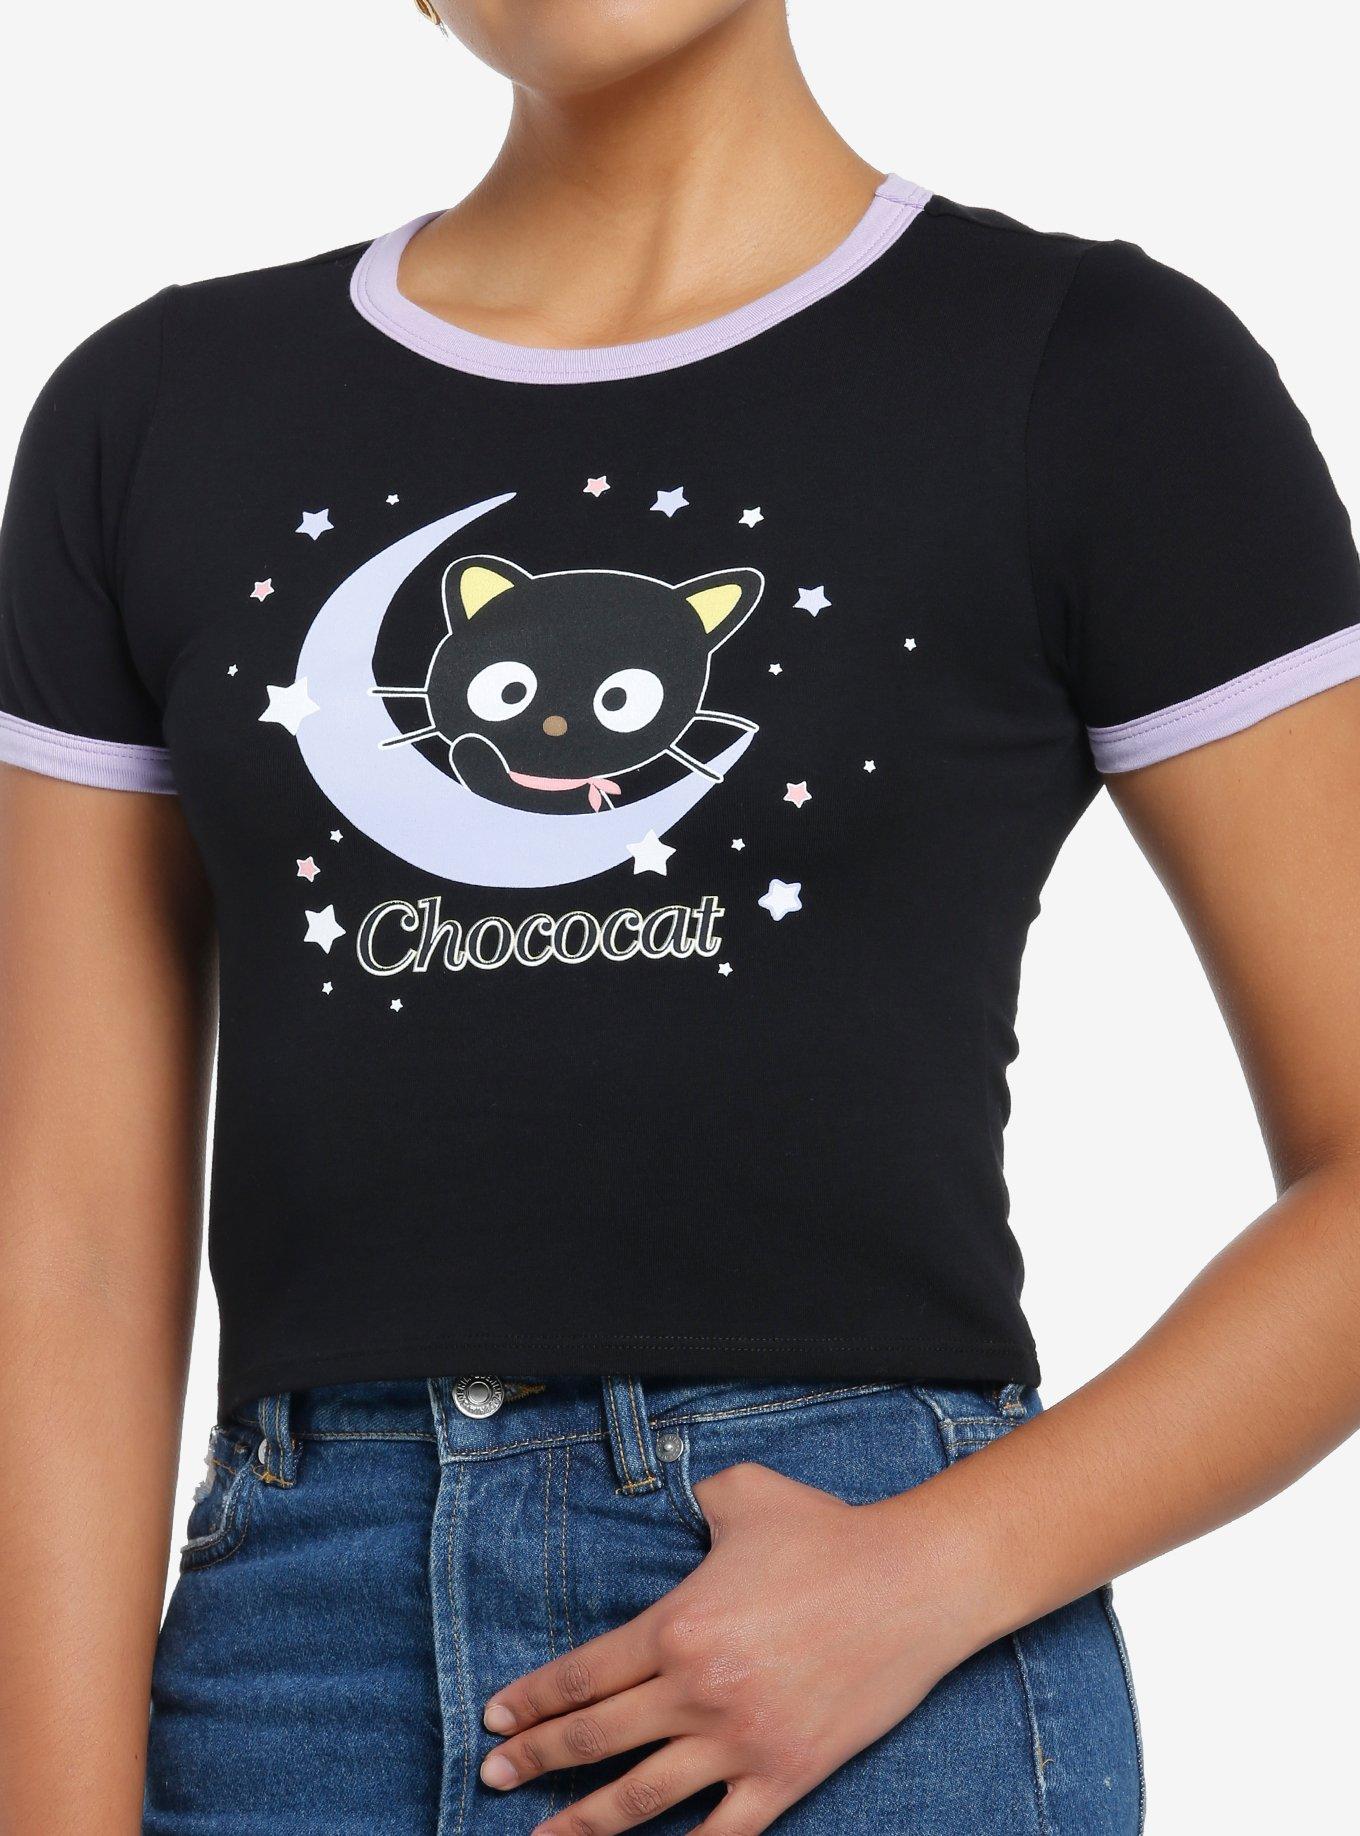 Chococat Celestial Girls Ringer Baby T-Shirt